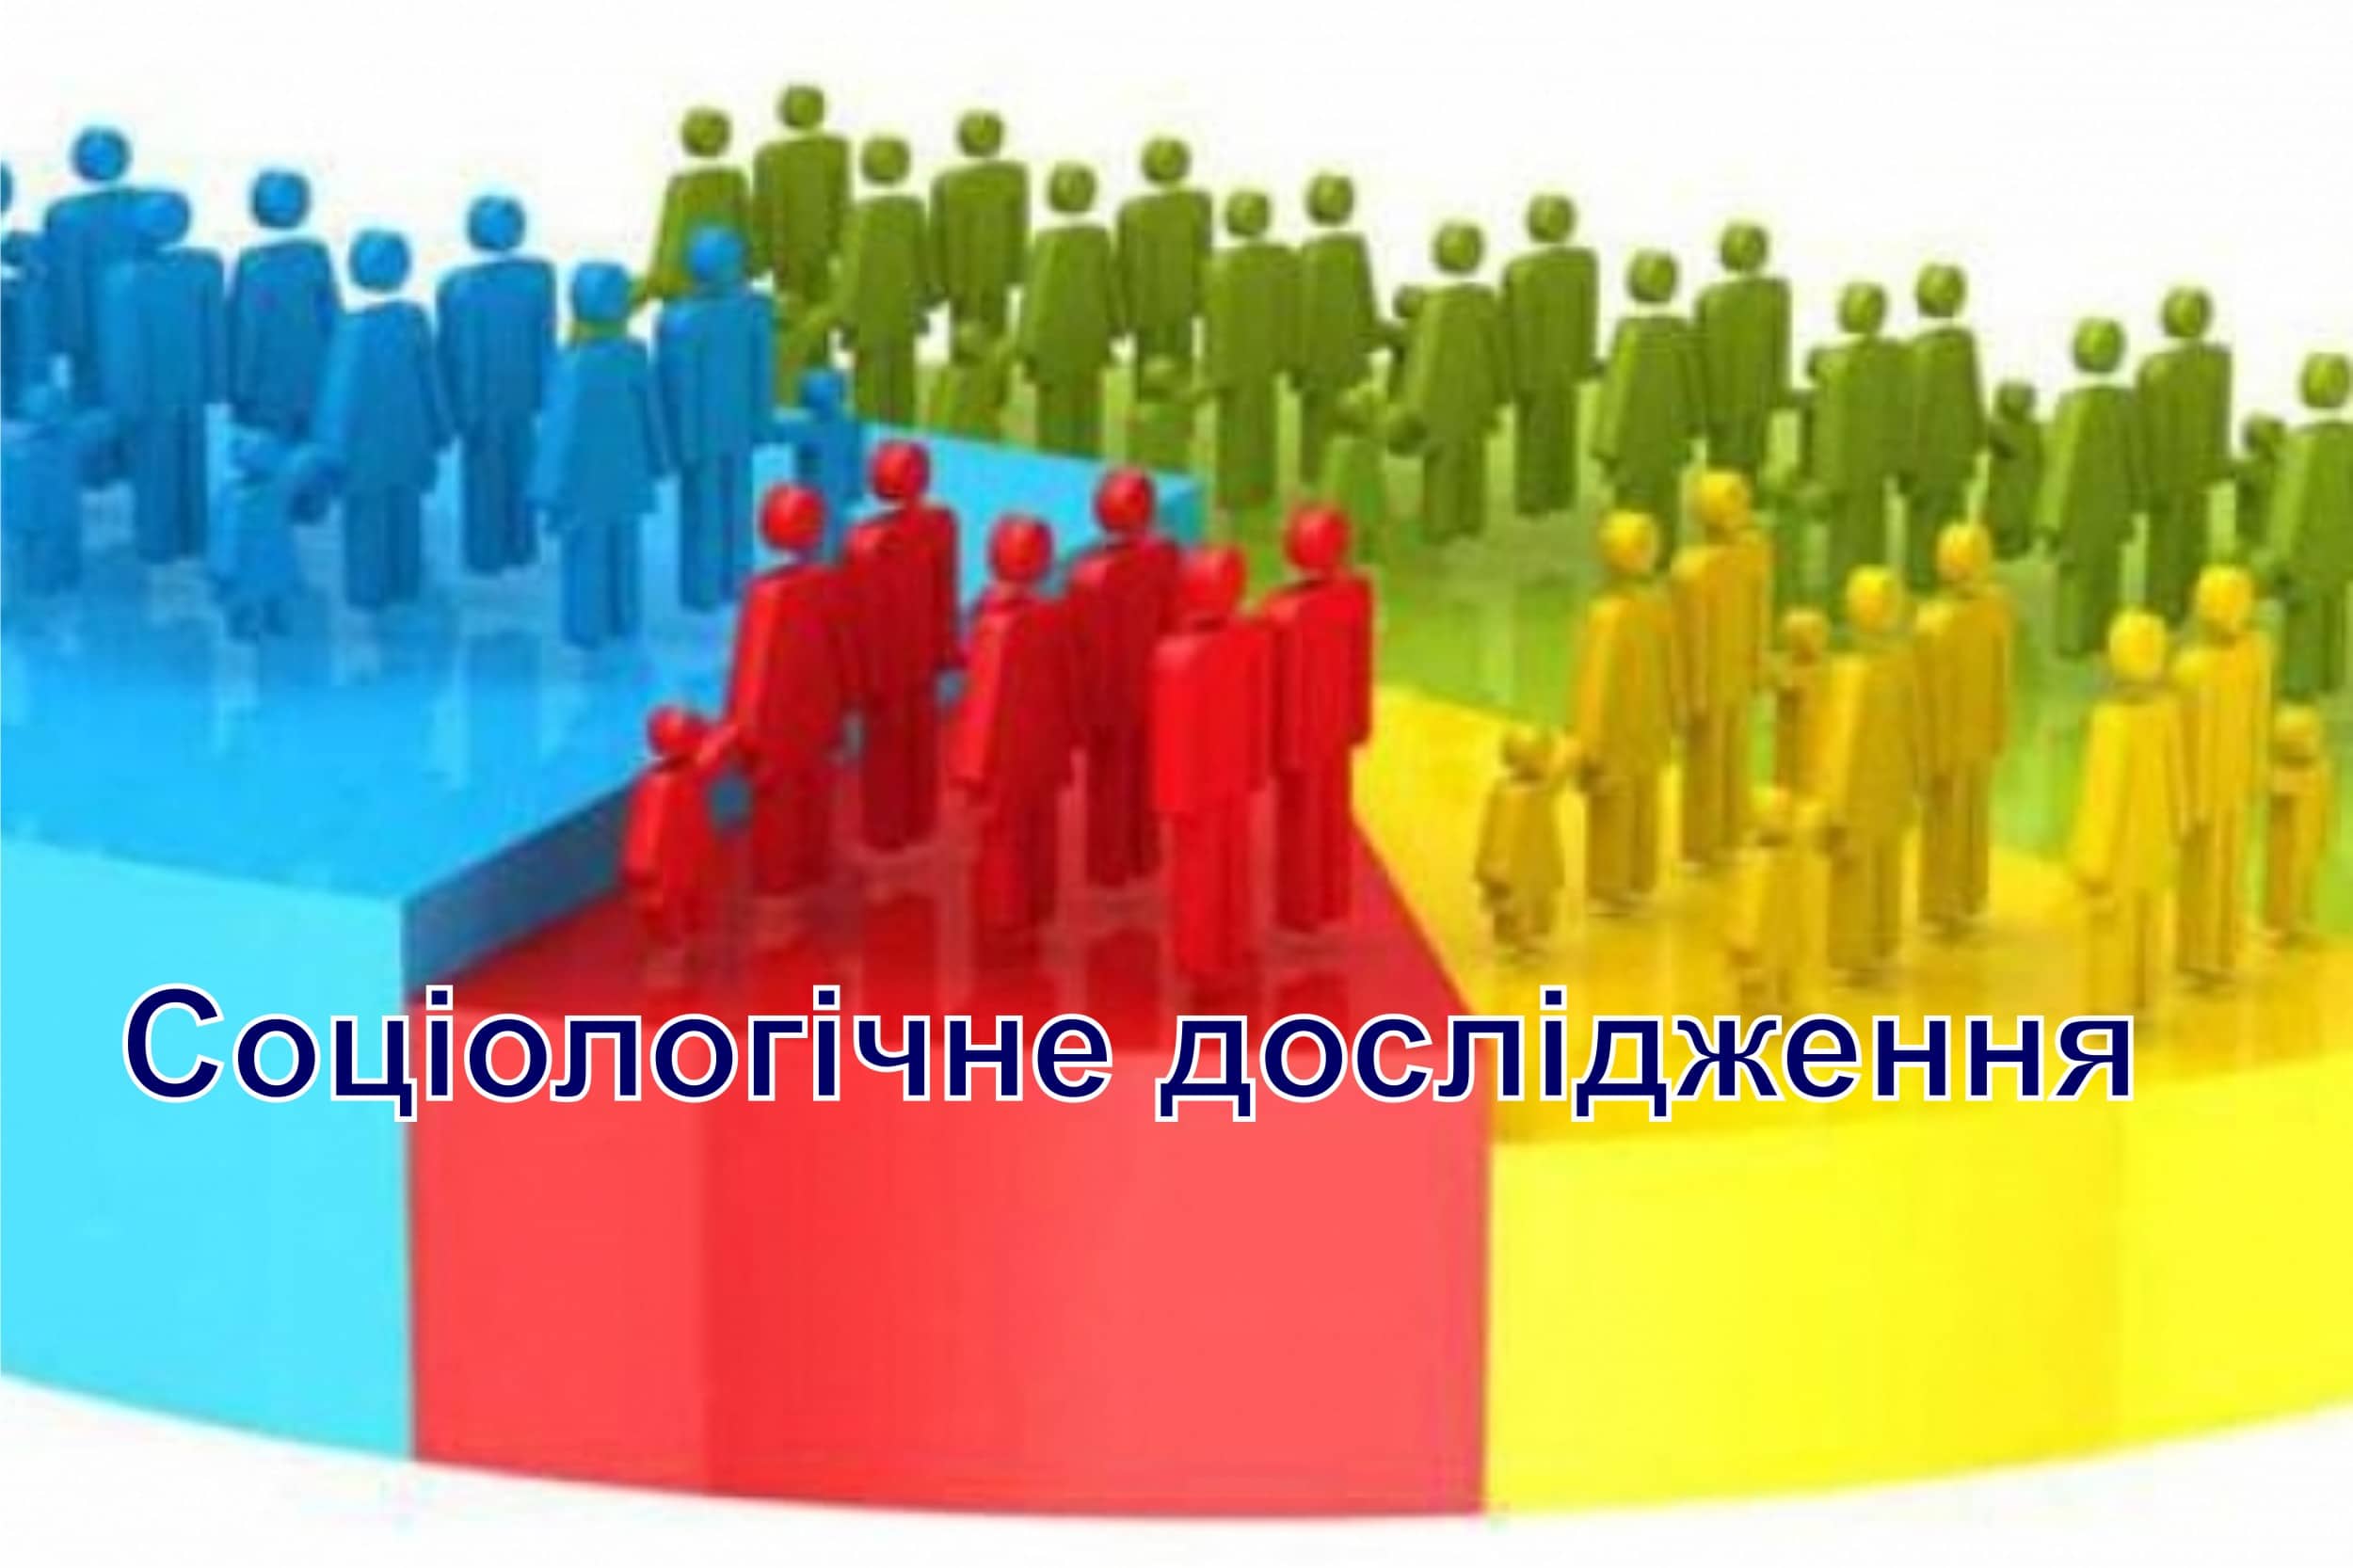 Ужгородців запрошують взяти участь у соціологічному дослідженні щодо поводження з відходами в місті